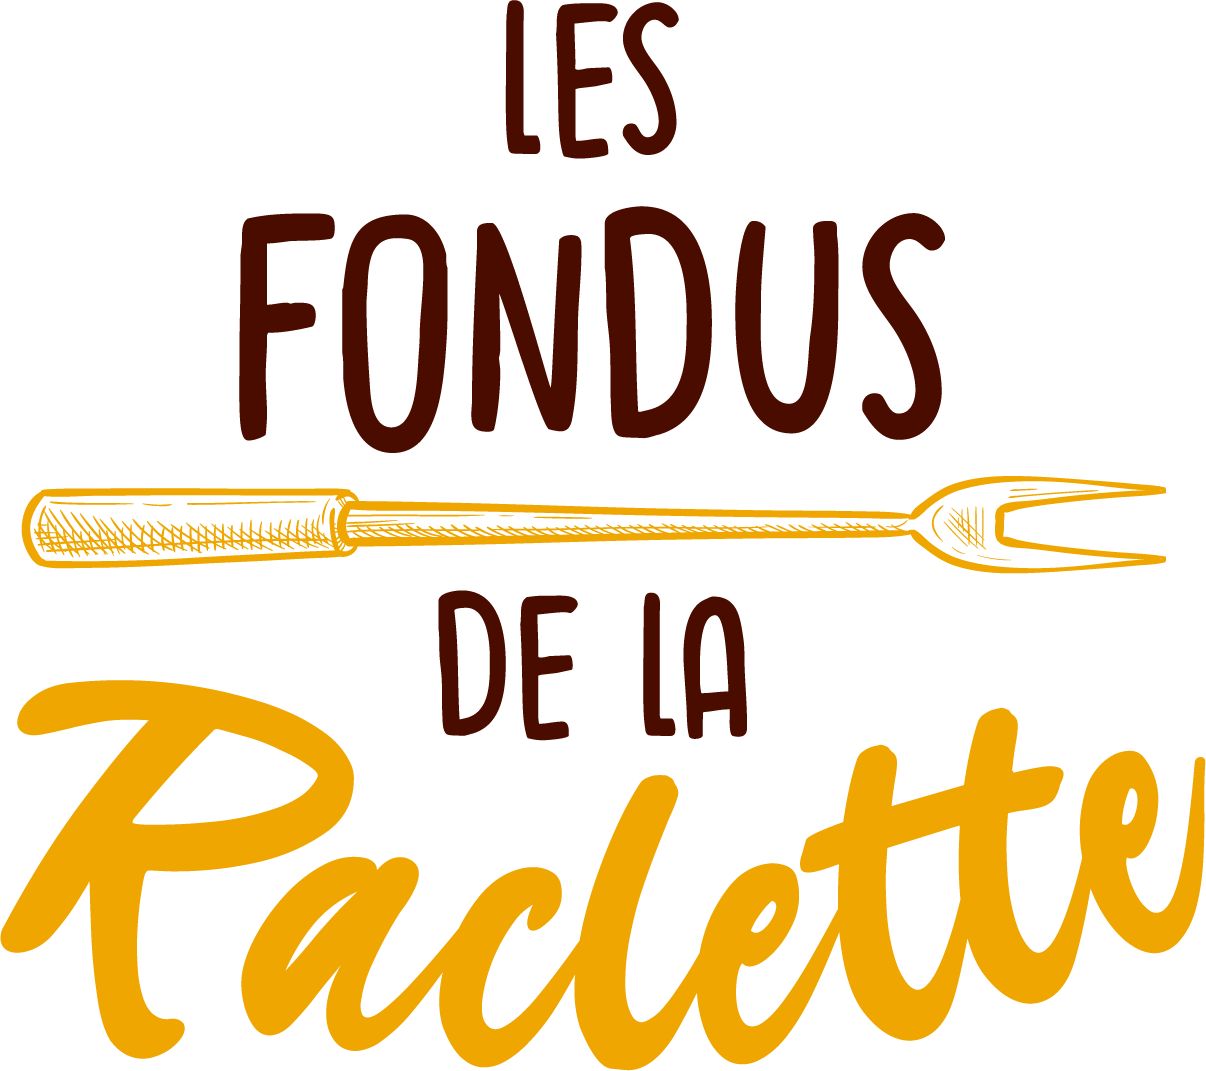 Les Fondus de la Raclette - Belgium